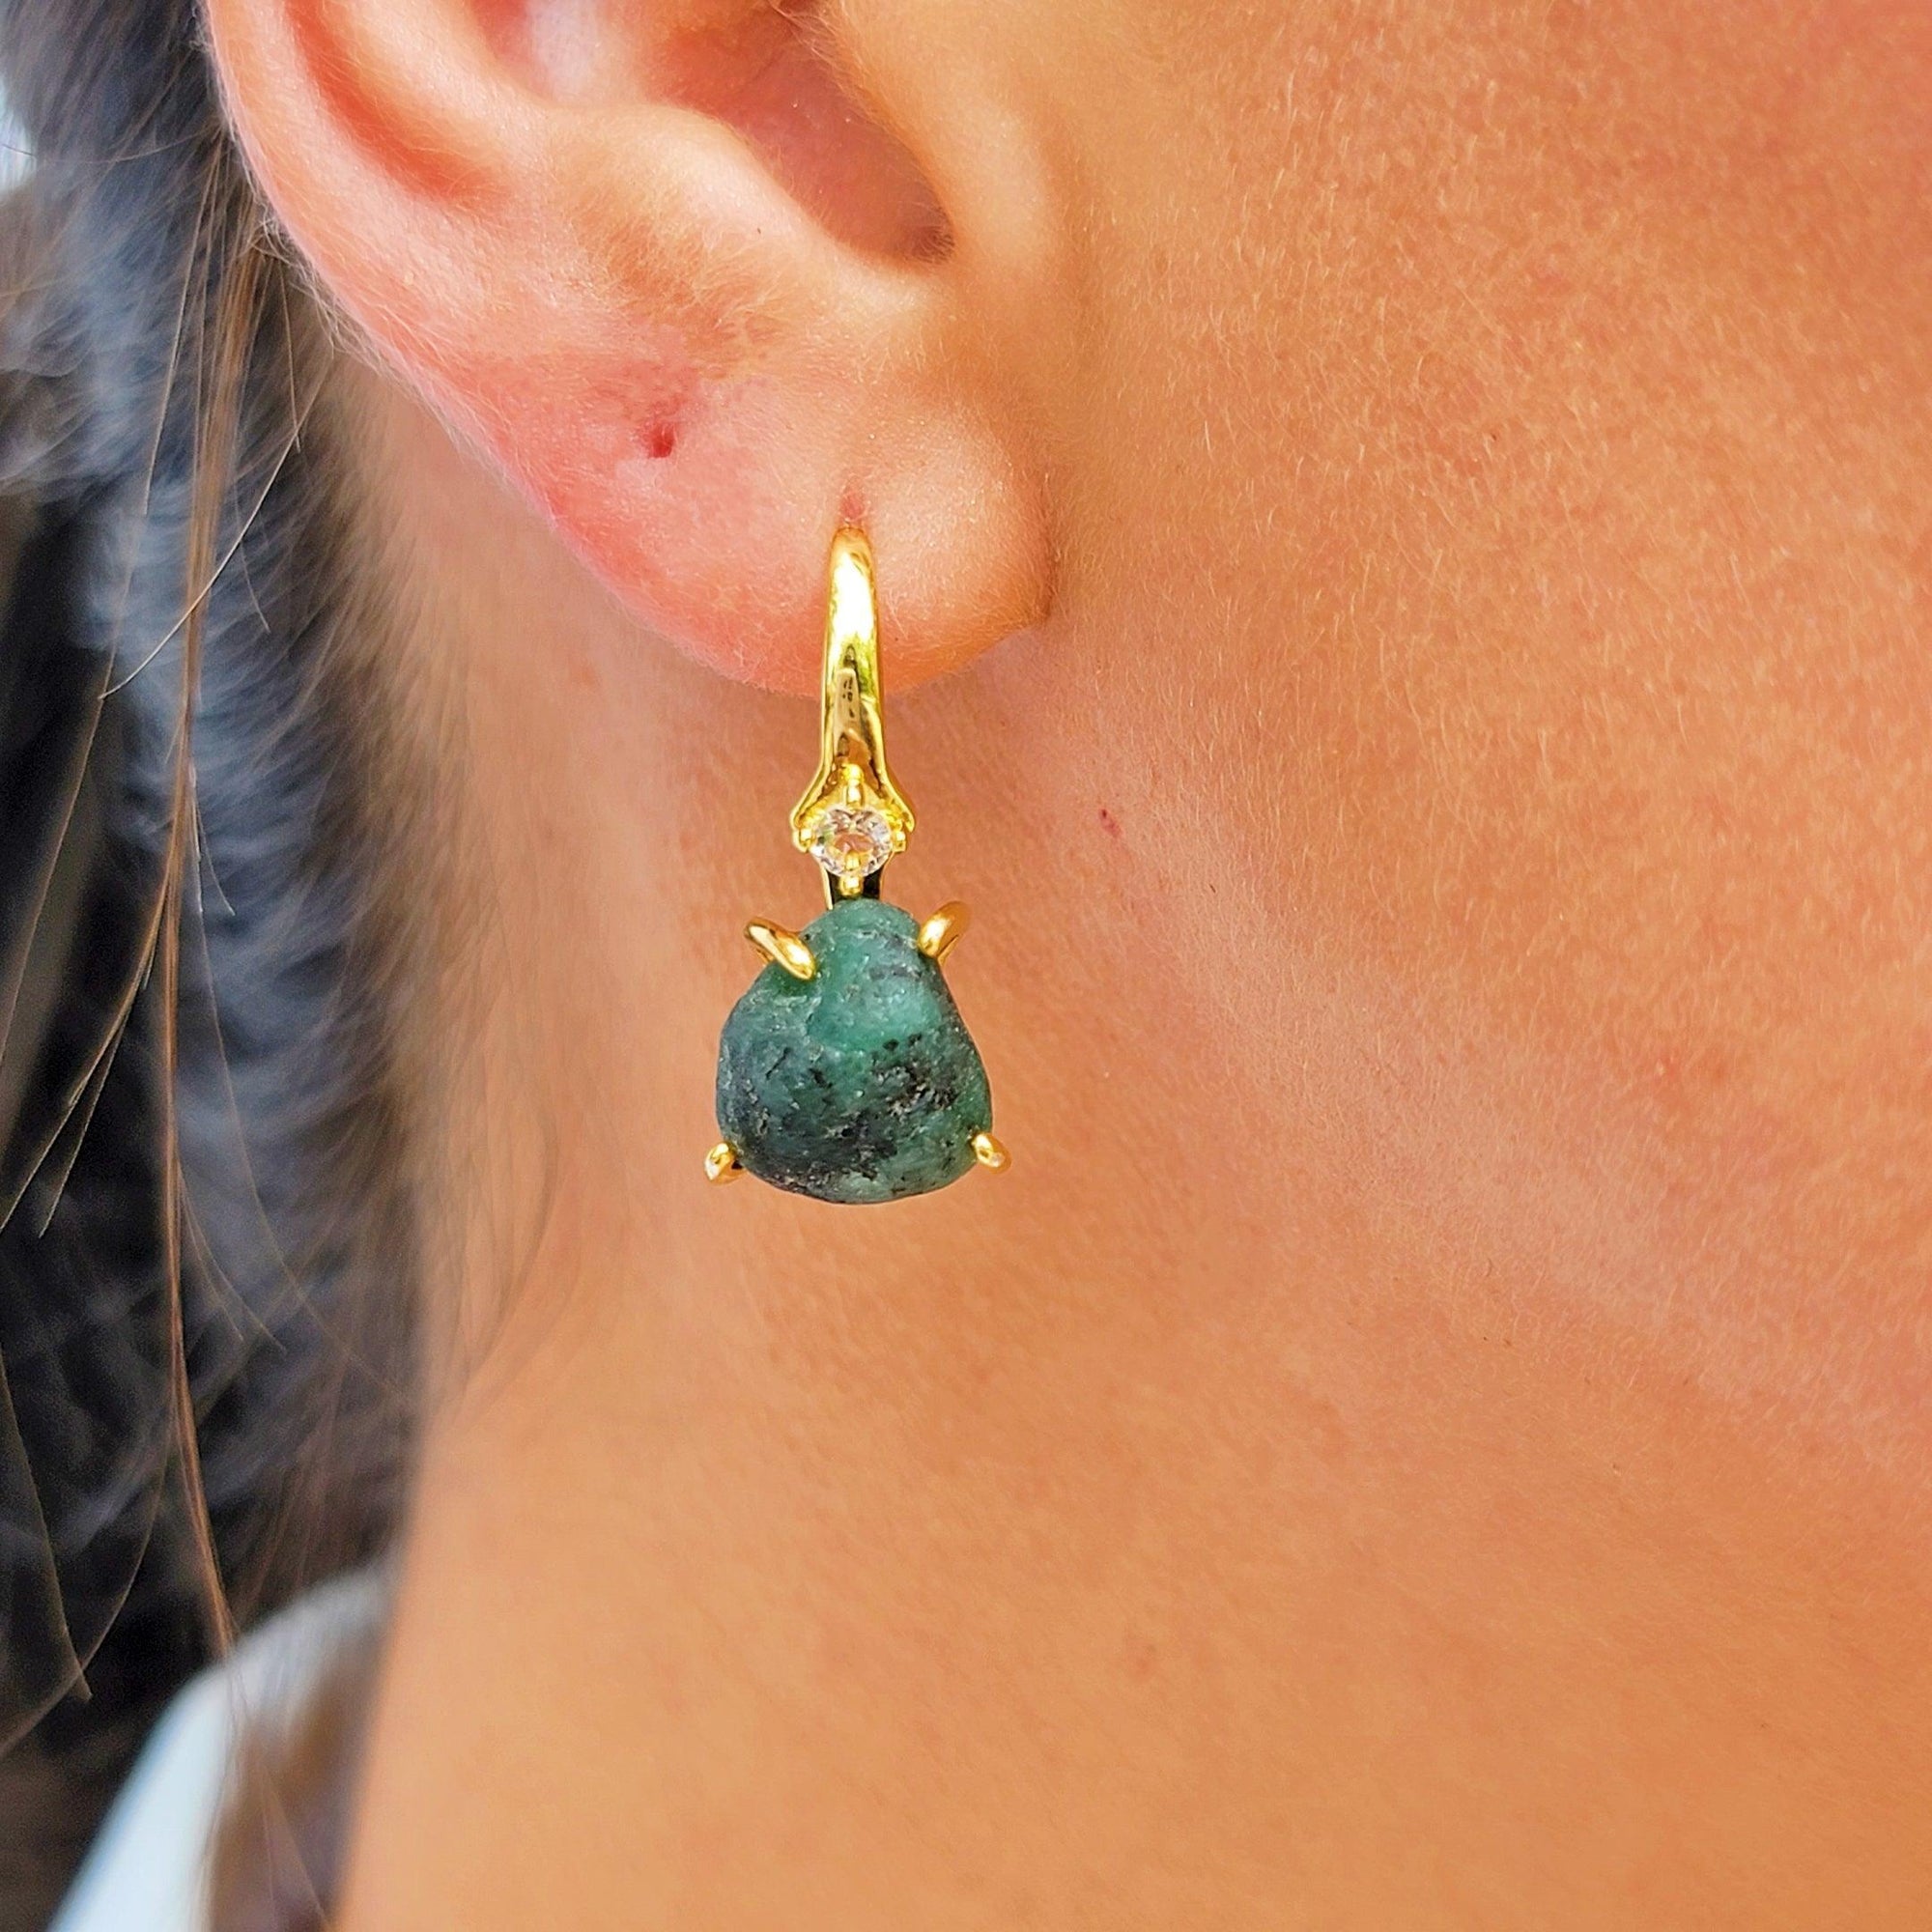 Raw Emerald Drop Earrings - Uniquelan Jewelry